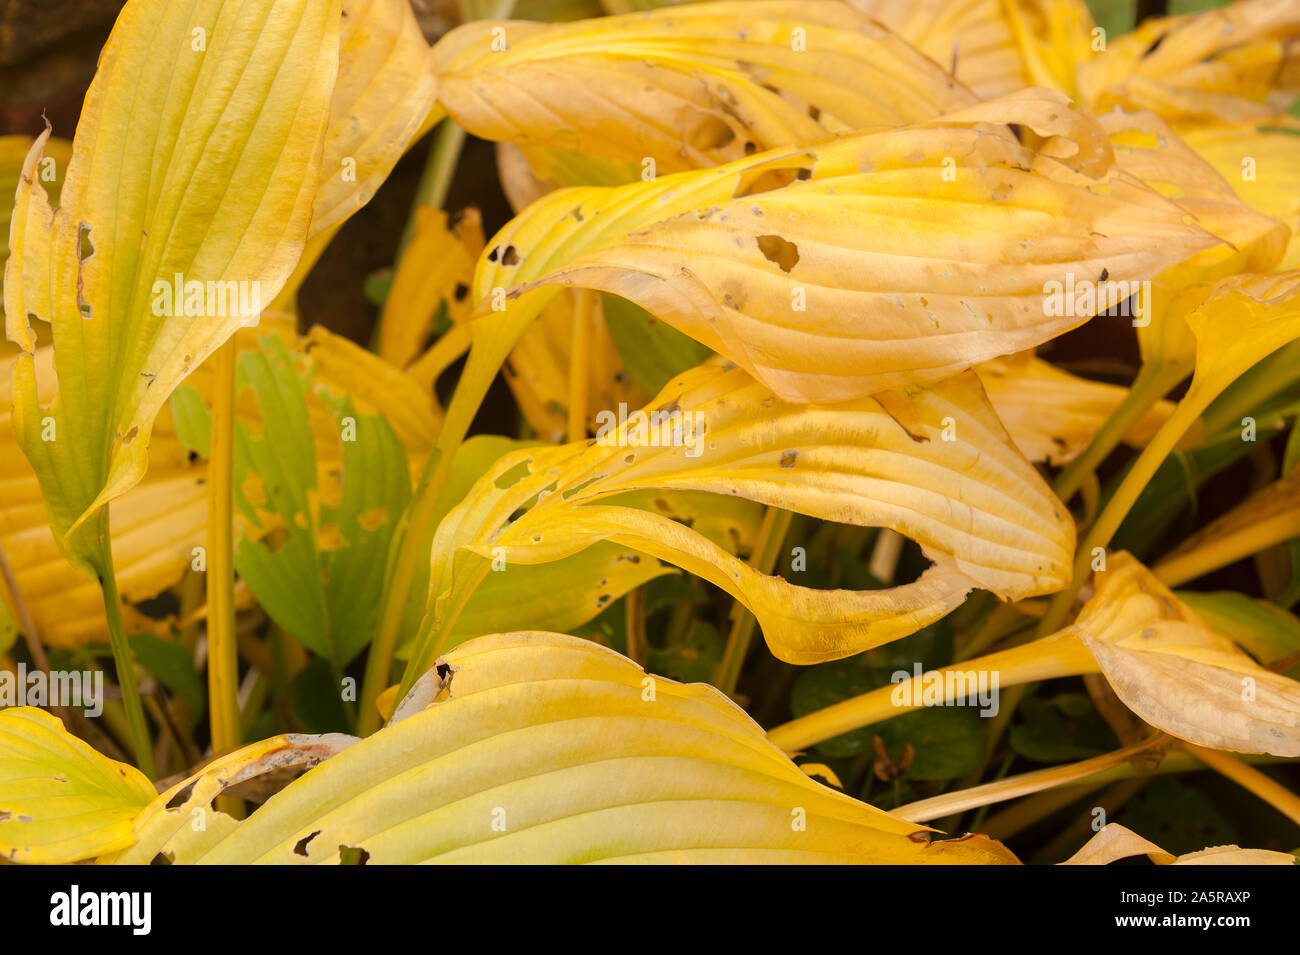 Hosta feuilles à l'automne, montrant une belle gamme de nuances jaune pastel avec escargot et limace dommage Banque D'Images